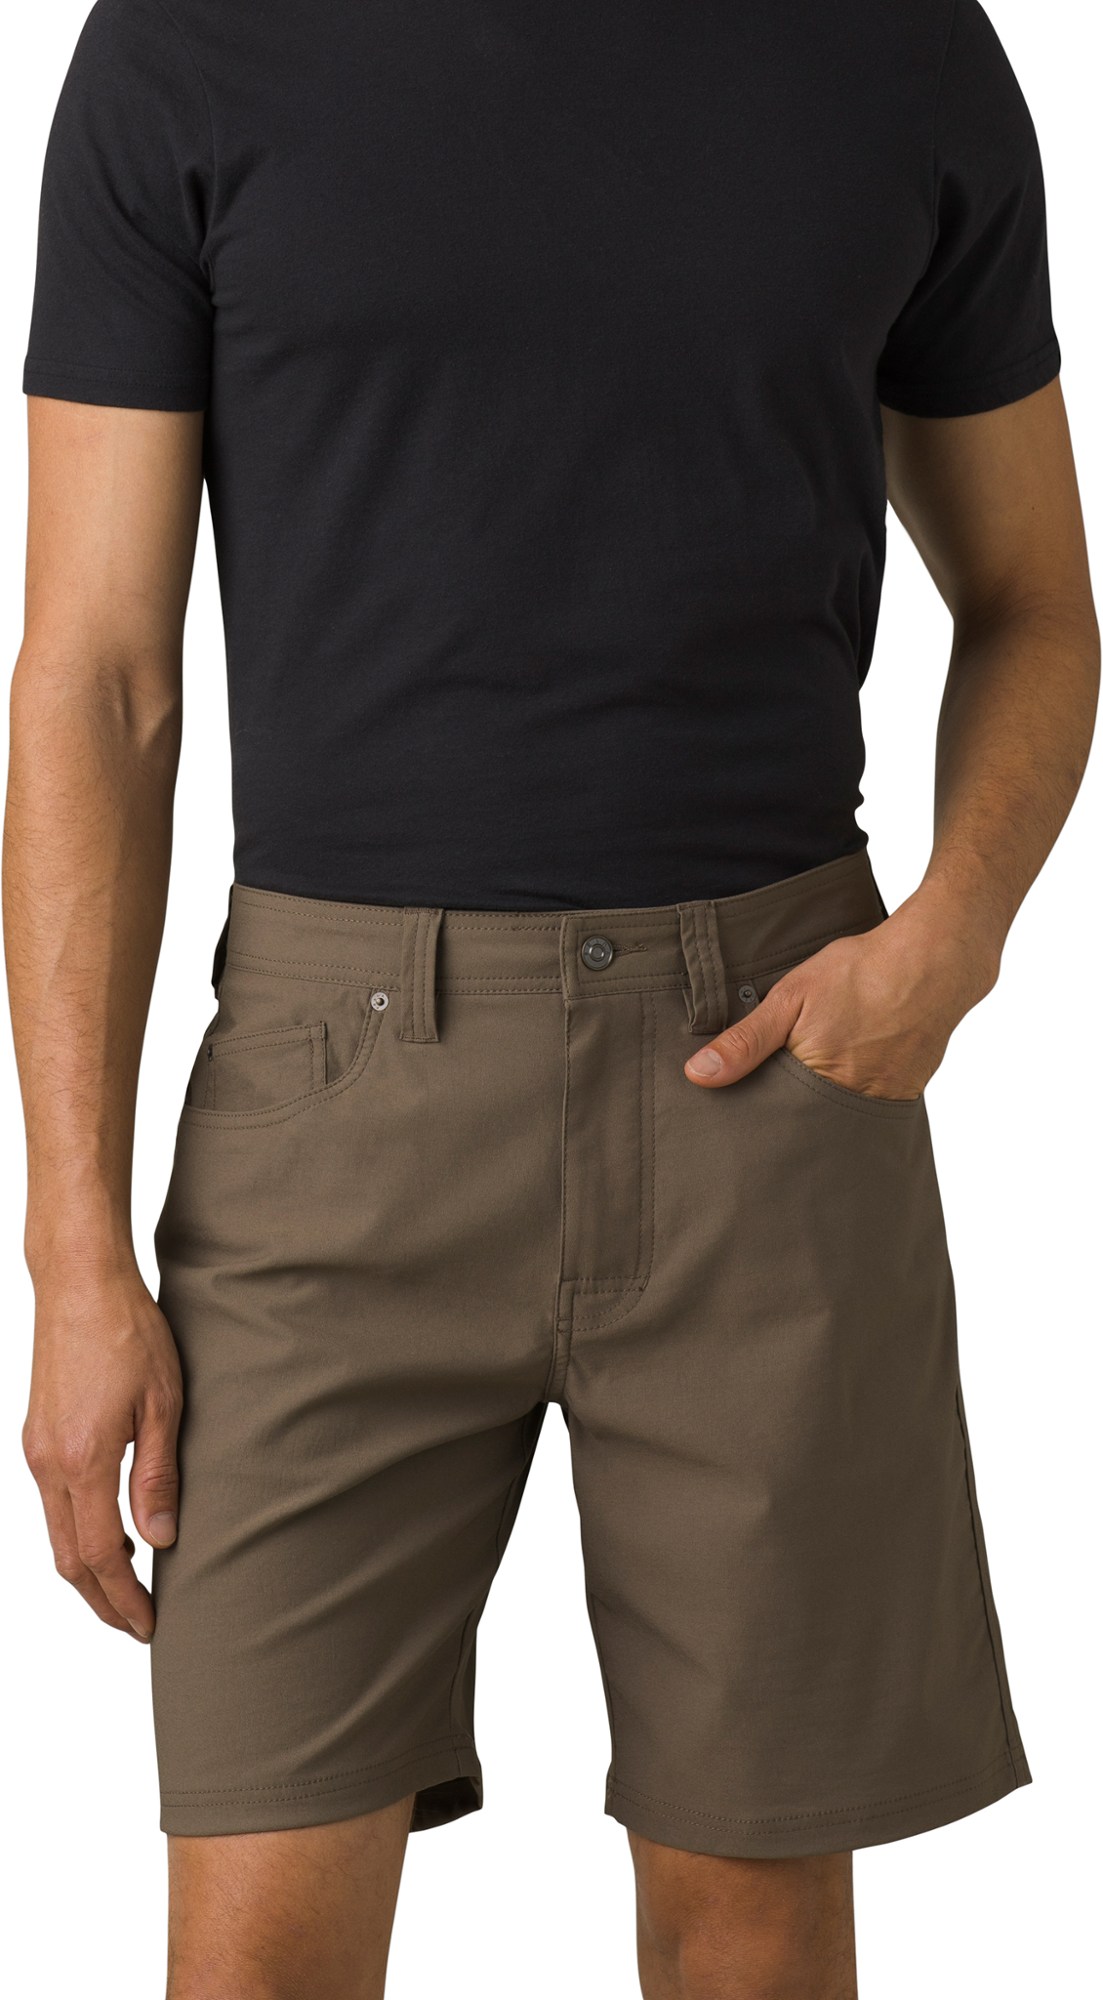 Шорты Brion II — мужские, внутренний шов 11 дюймов prAna, коричневый шорты prana station shorts цвет sorrel